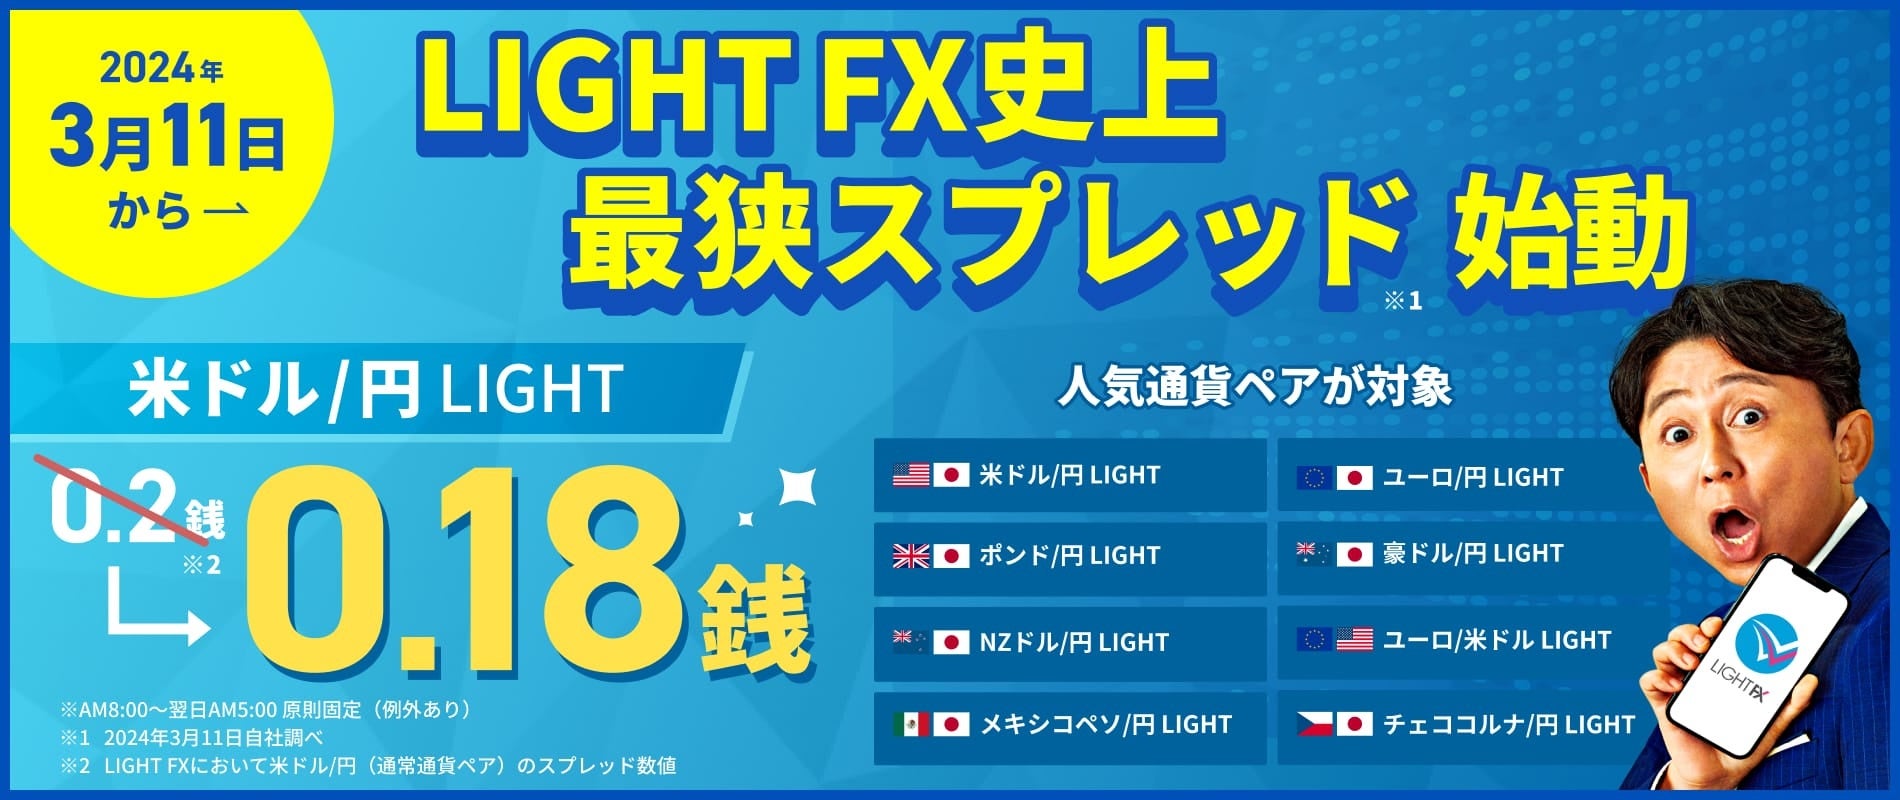 【LIGHT FX史上最狭のスプレッド】ついに0.18銭の米ドル/円 LIGHT！